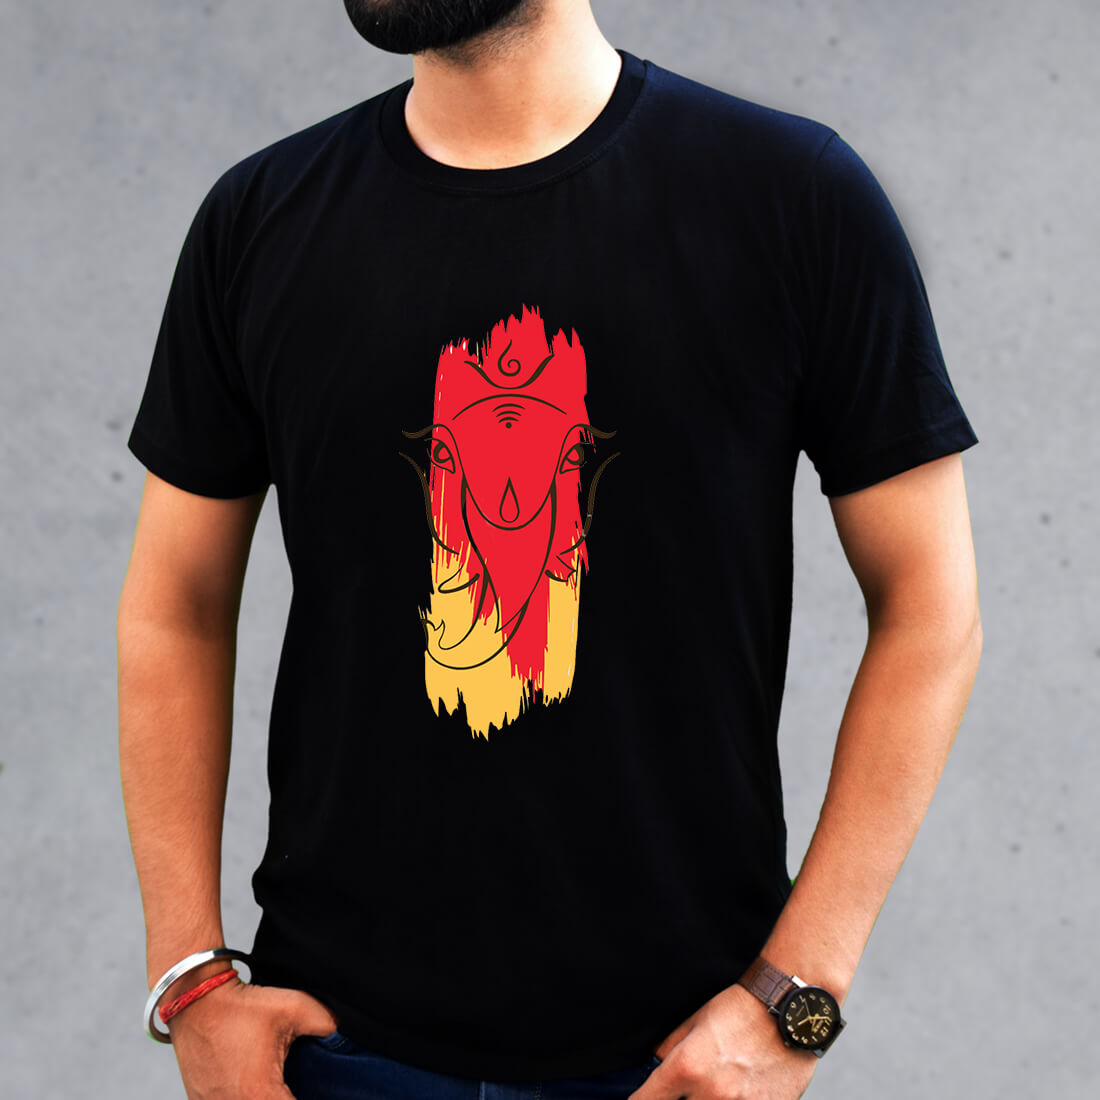 Best Ganesha Latest Design Round Neck T-Shirt Black